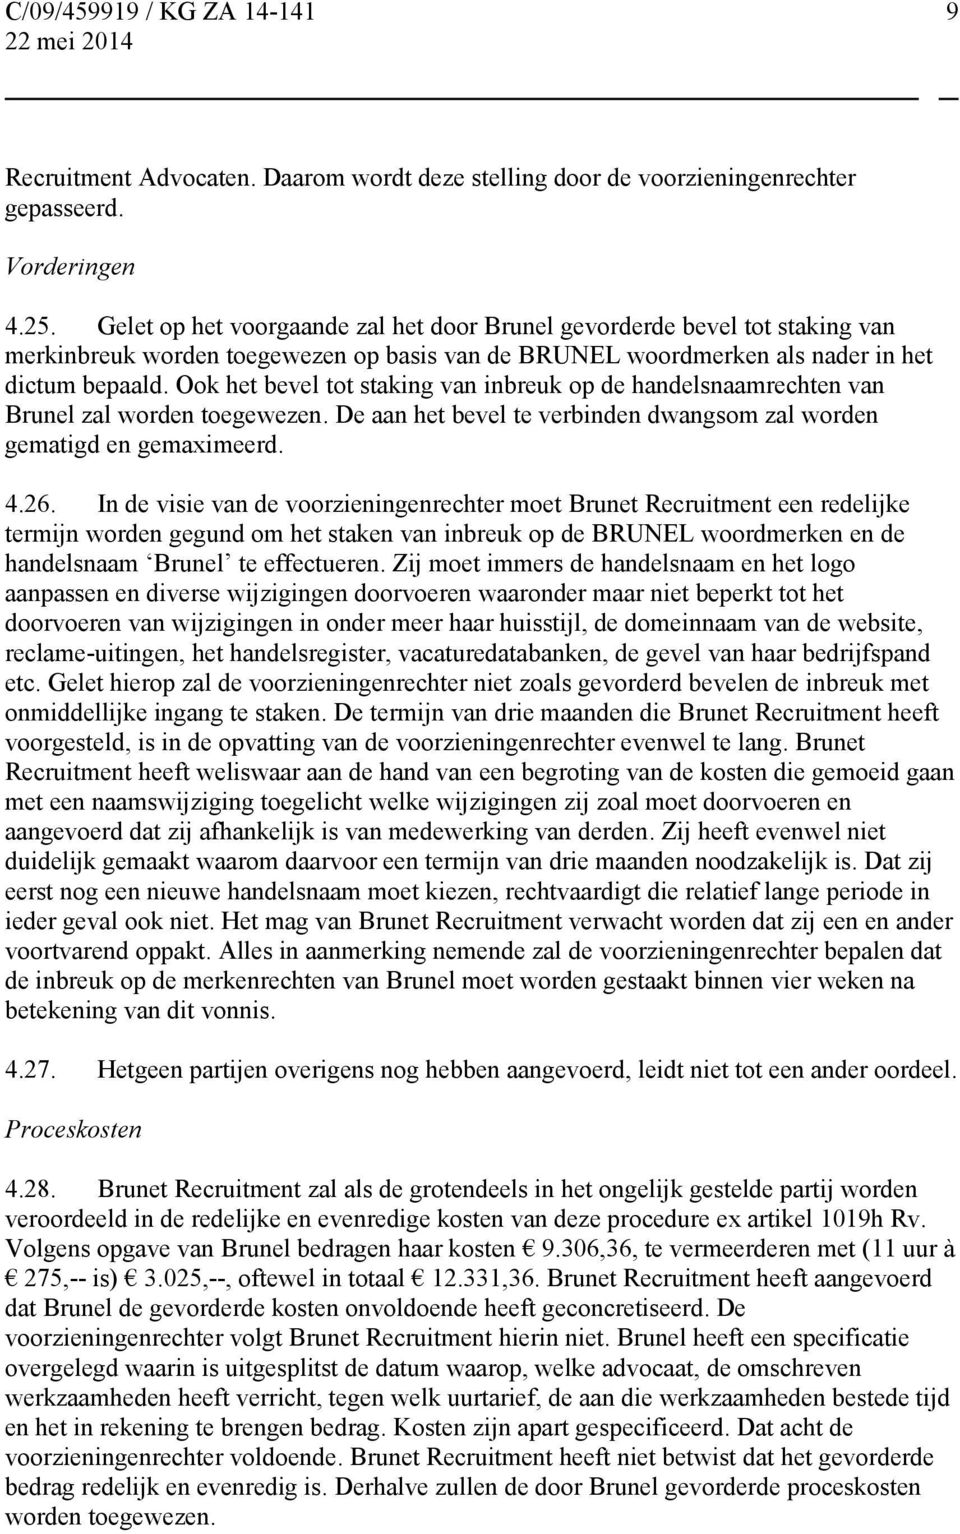 Ook het bevel tot staking van inbreuk op de handelsnaamrechten van Brunel zal worden toegewezen. De aan het bevel te verbinden dwangsom zal worden gematigd en gemaximeerd. 4.26.